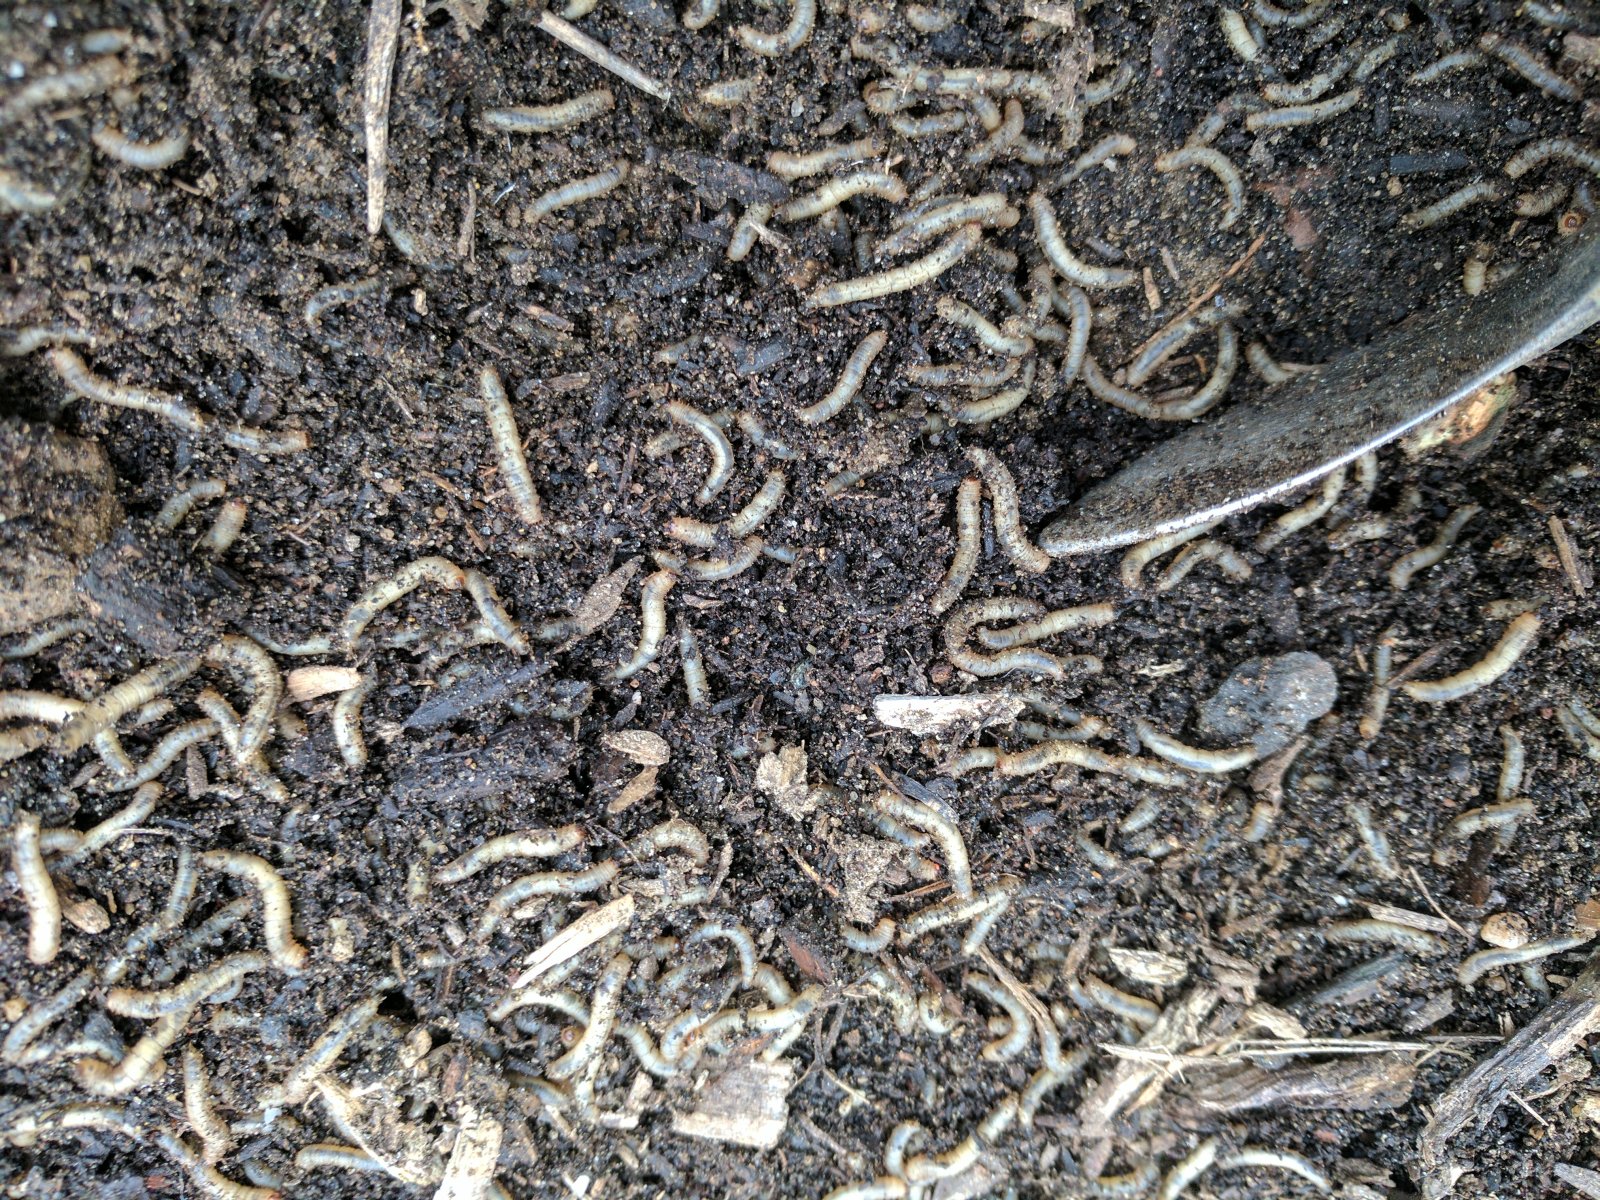 cutworm-or-fungus-gnat-larvae.jpg